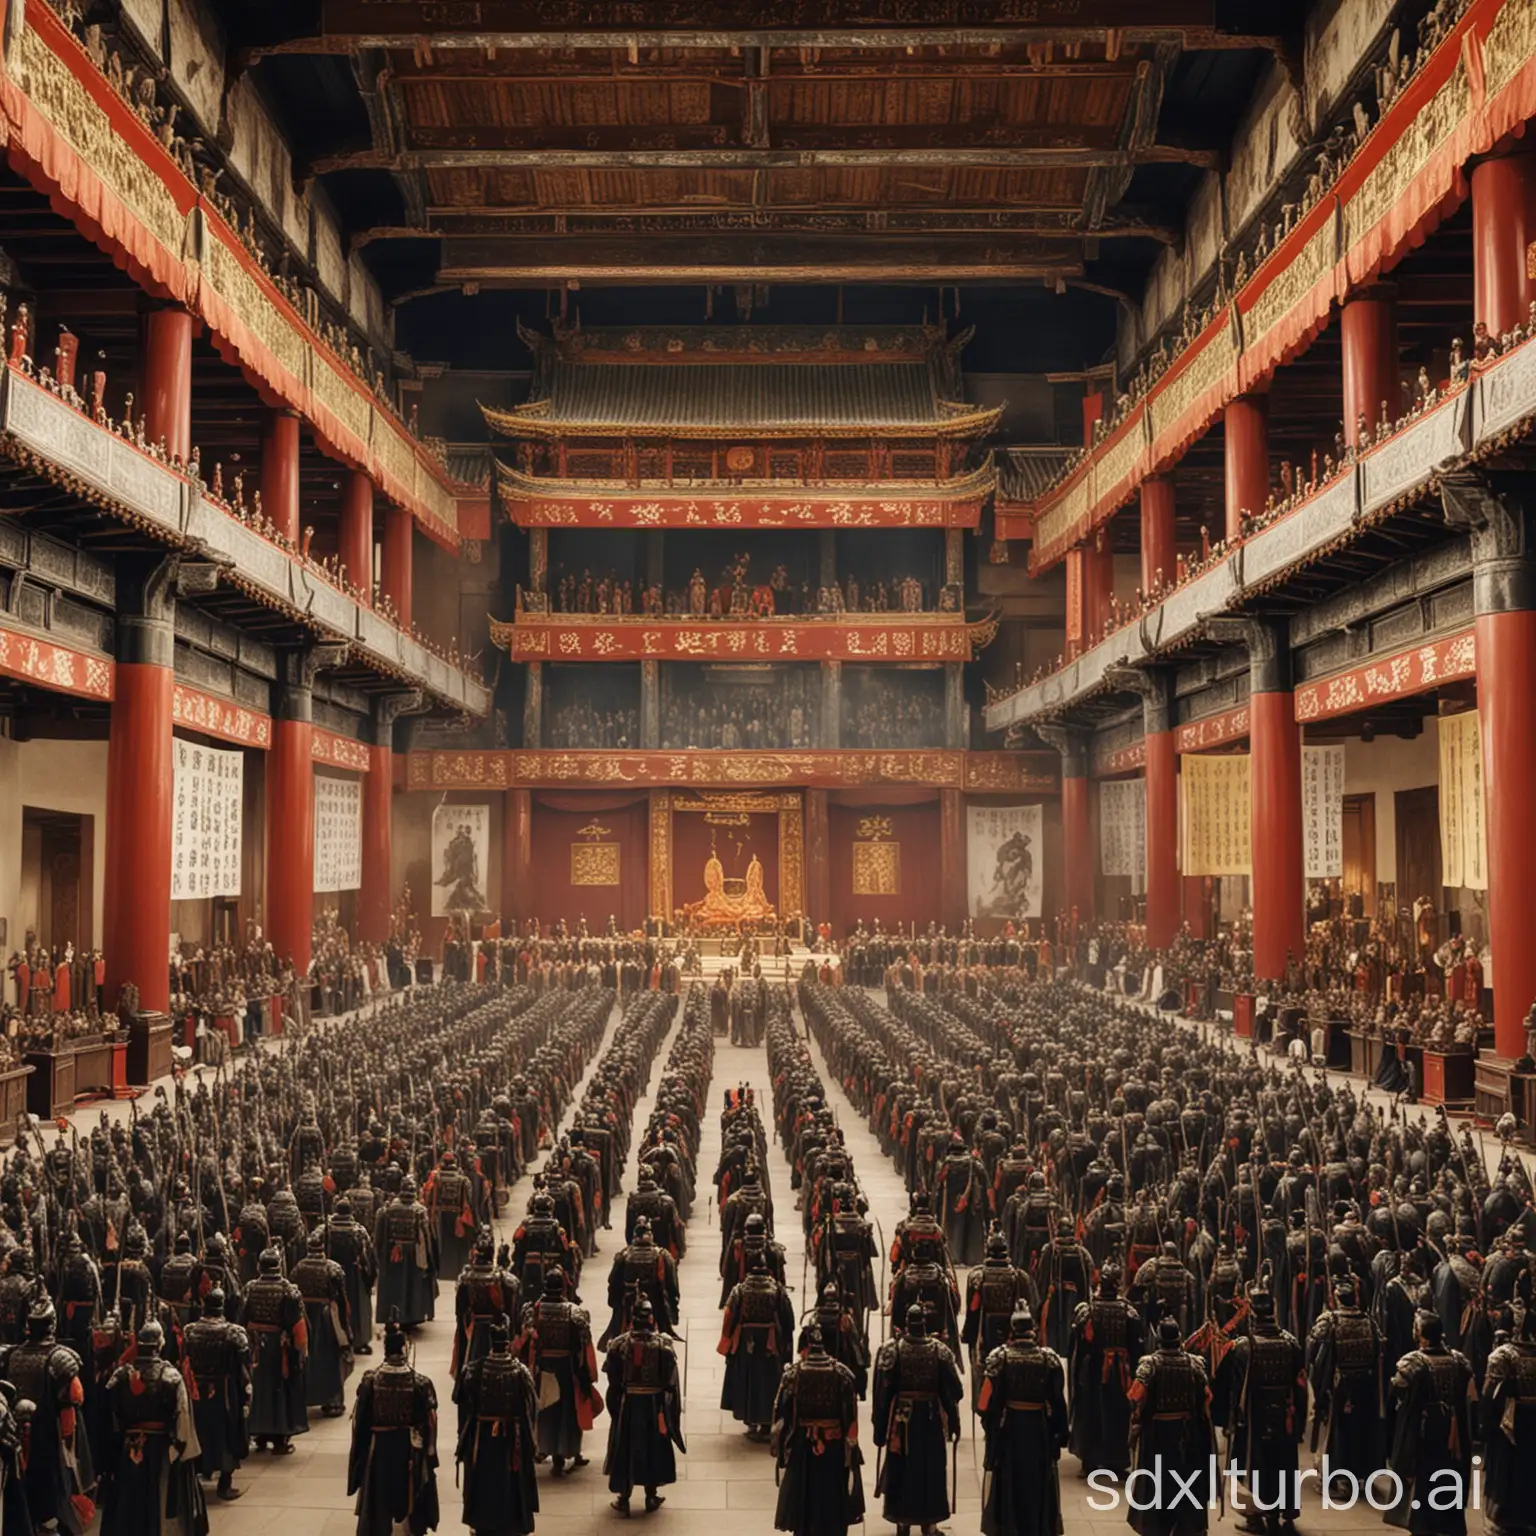 Three Kingdoms period, magnificent main hall, solemn Cao Cao, many officials